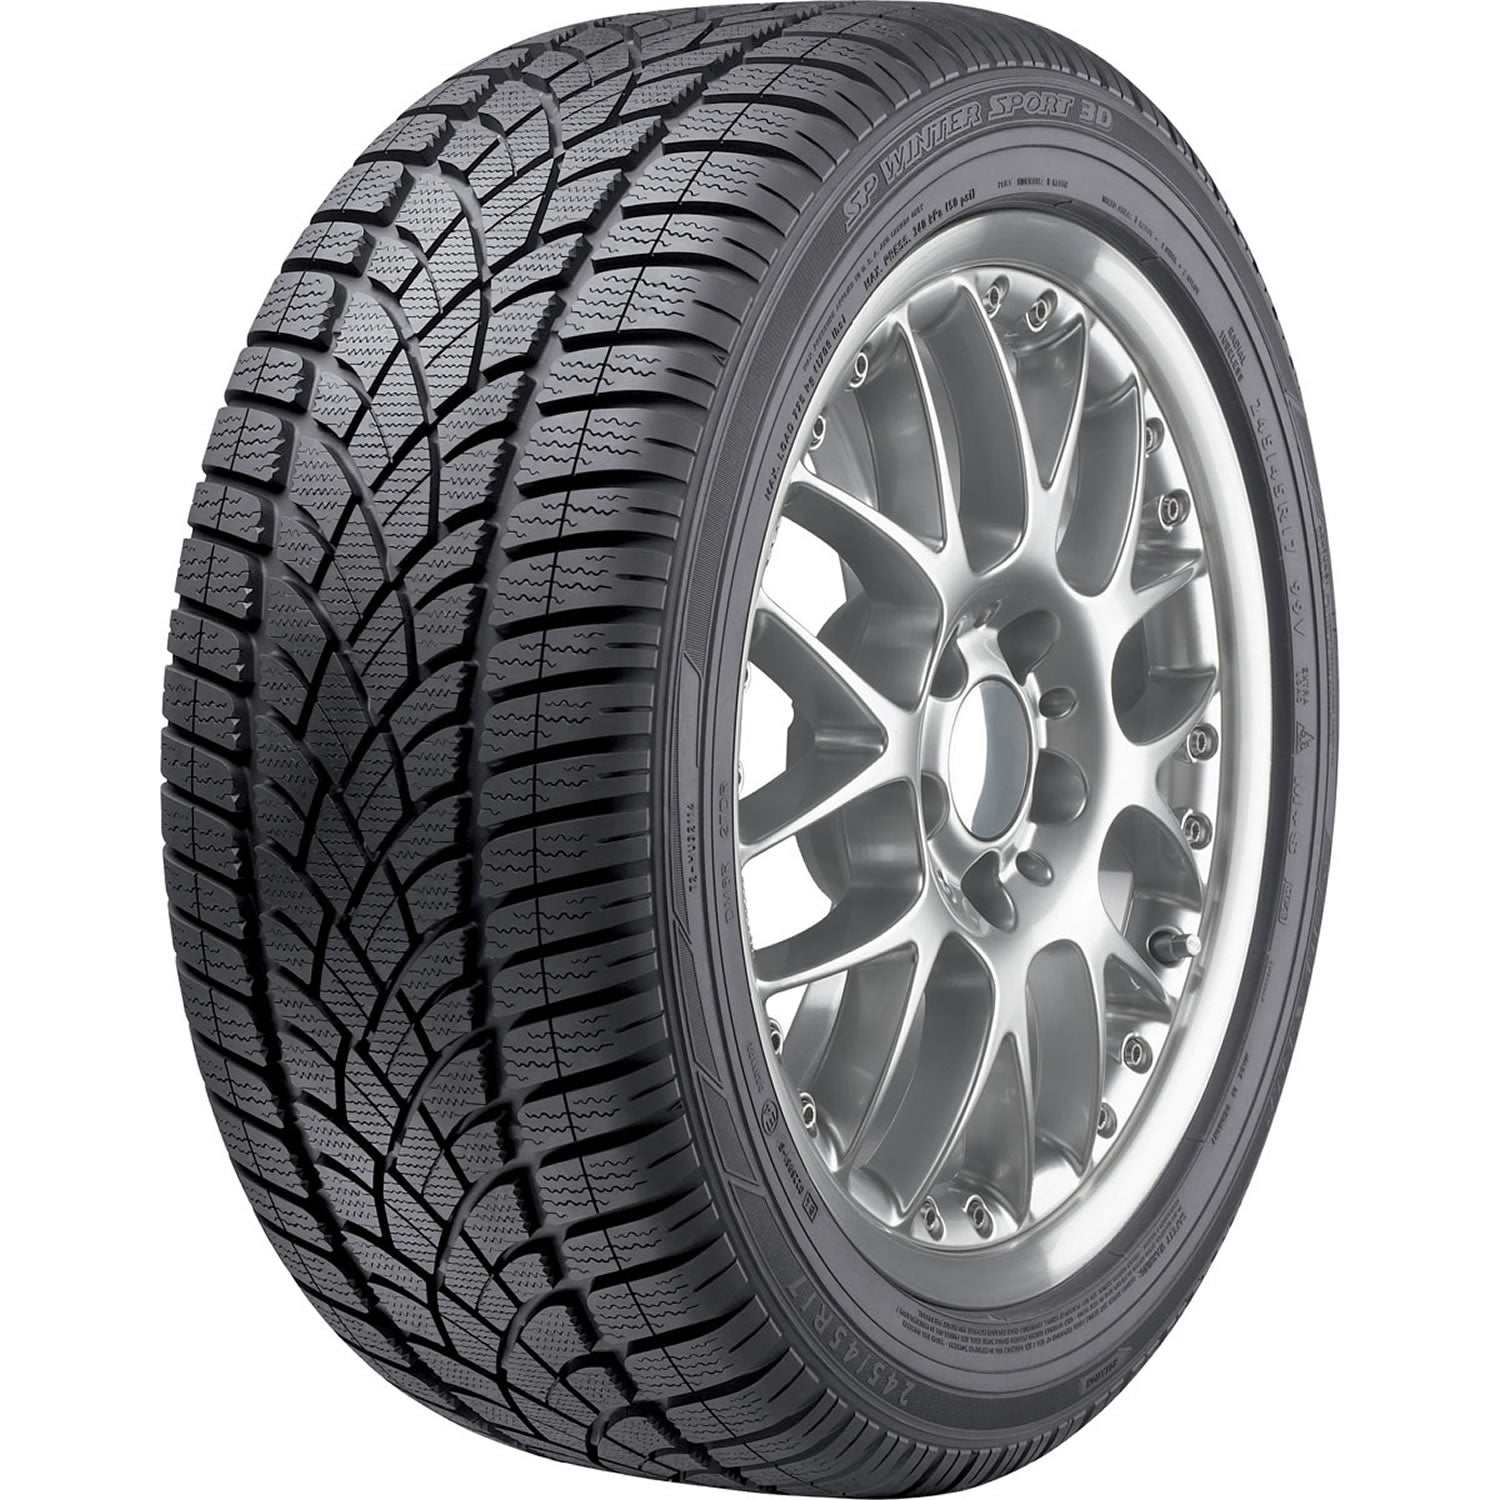 DUNLOP SP WINTER SPORT 3D 255/50R19 (29.1X10.4R 19) Tires